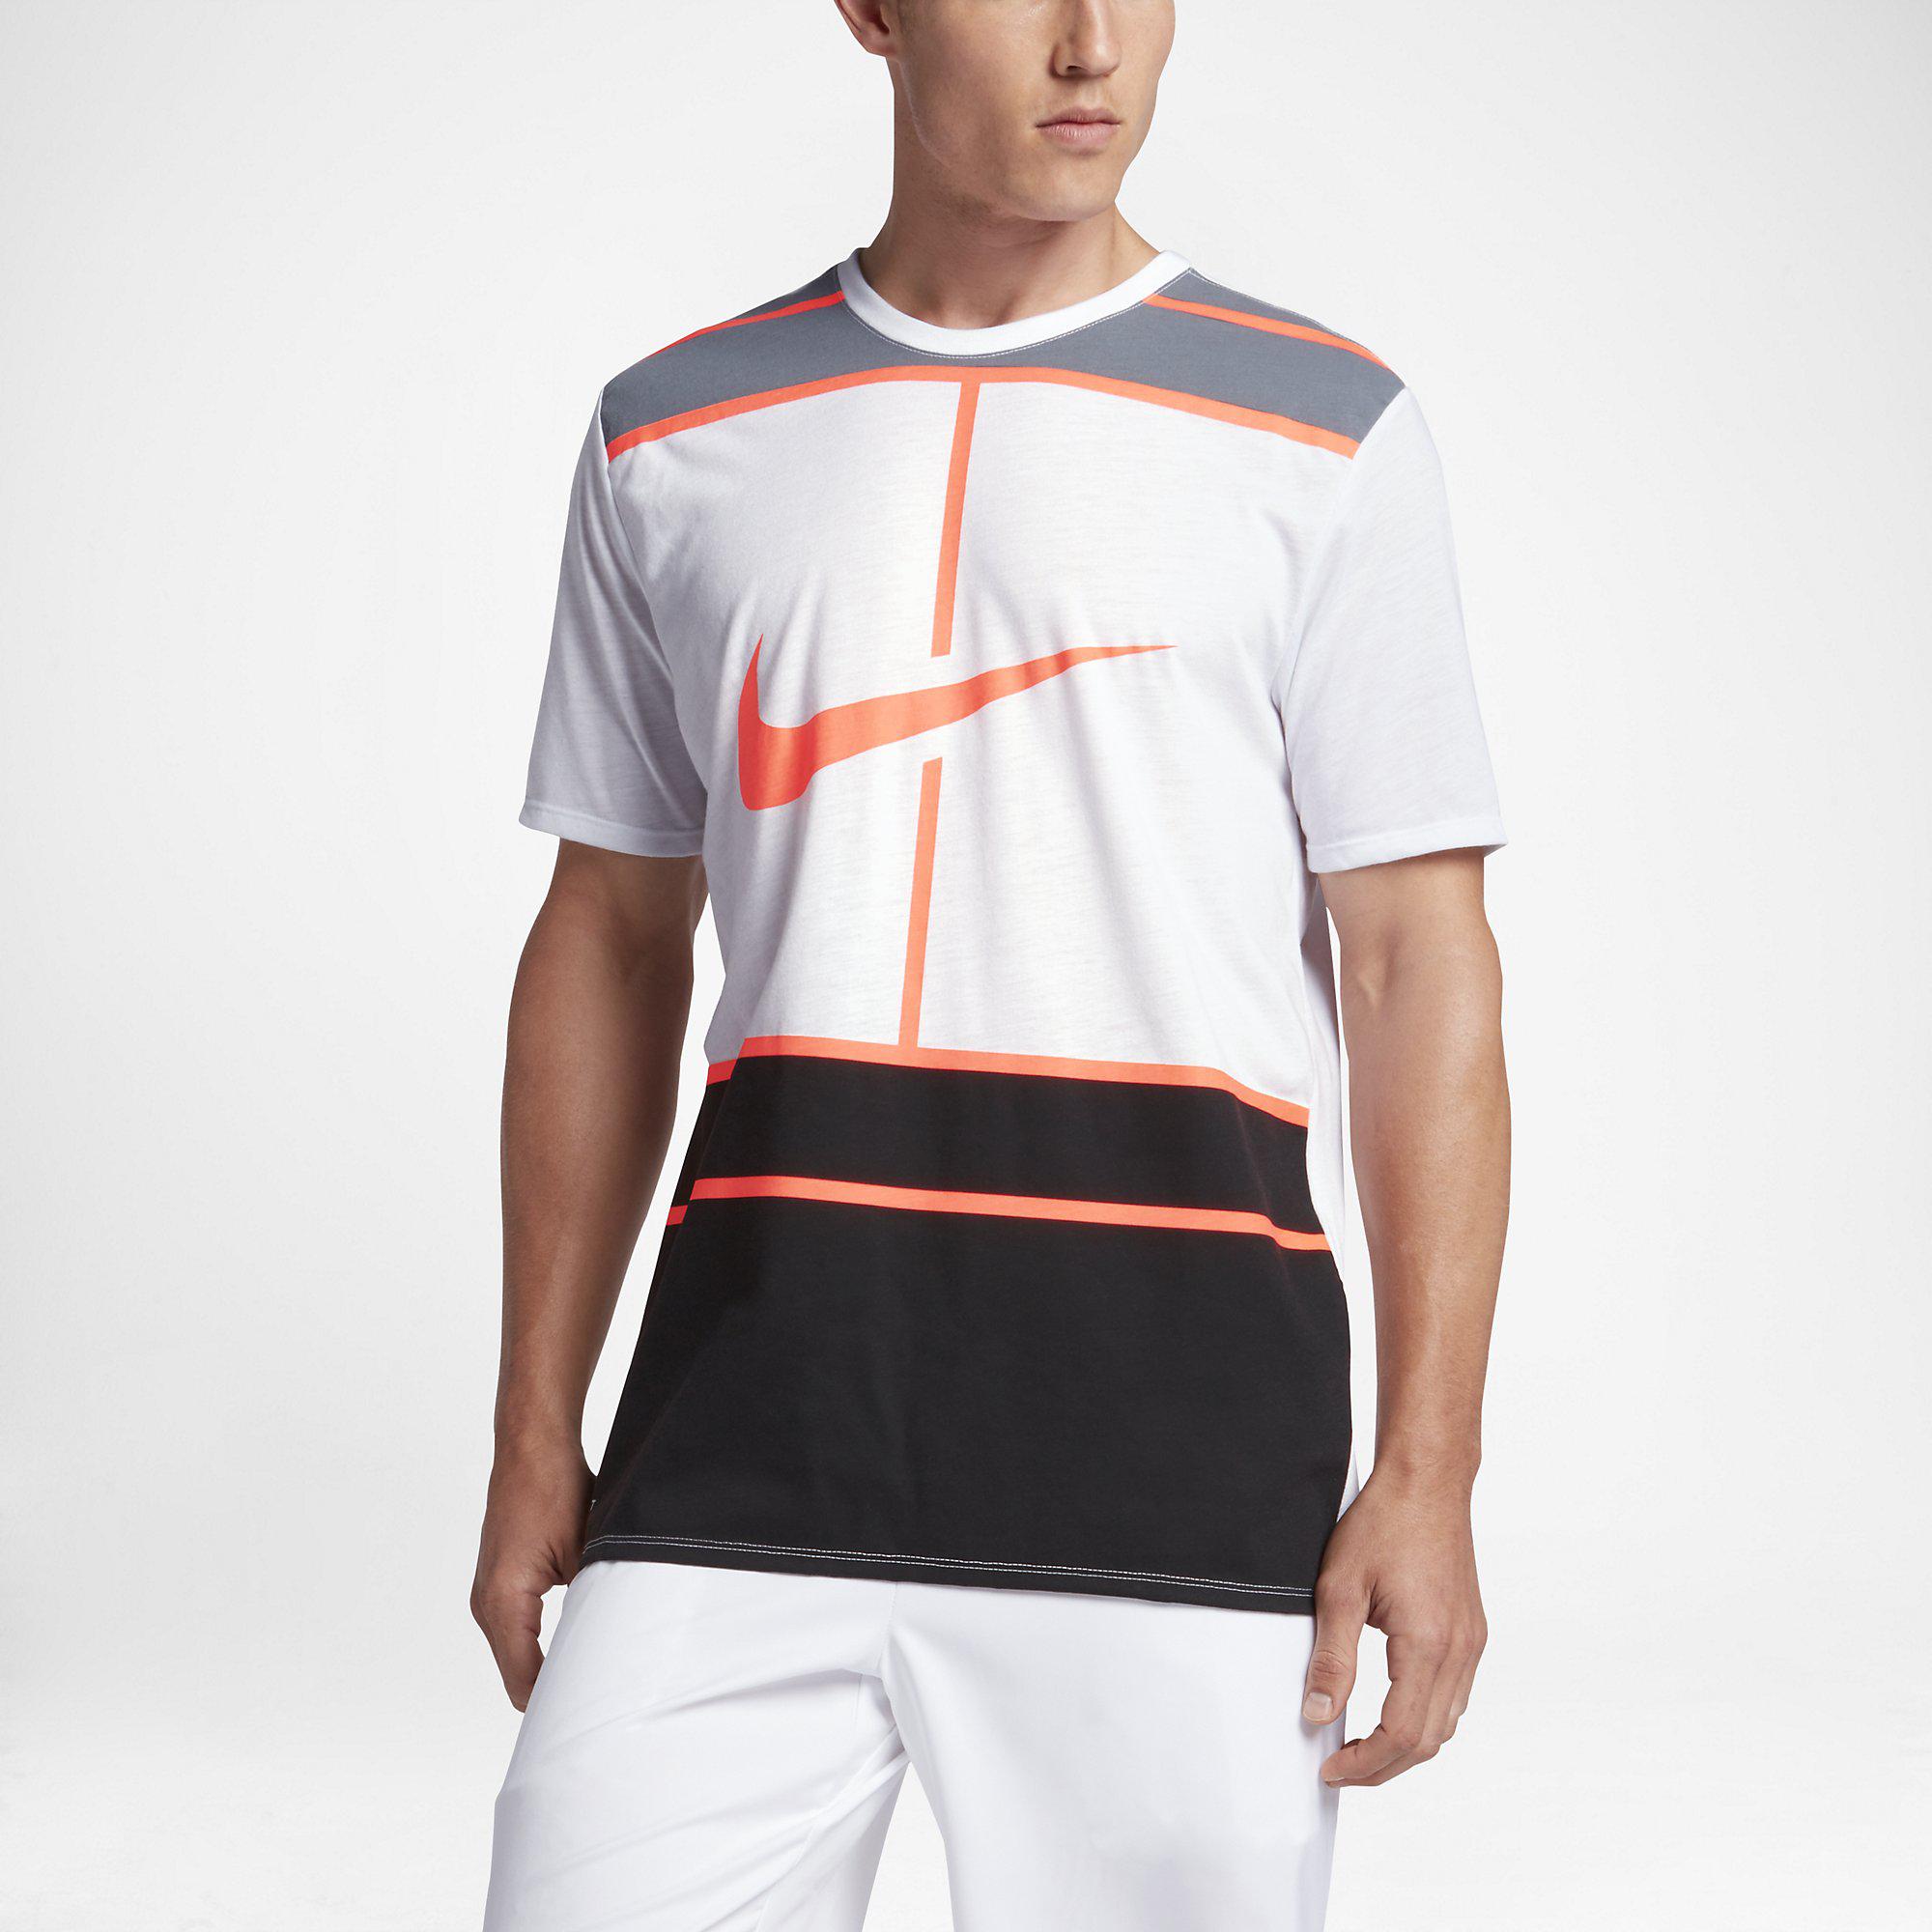 Nike Mens Dry Tennis T-Shirt - White/Bright Mango - Tennisnuts.com